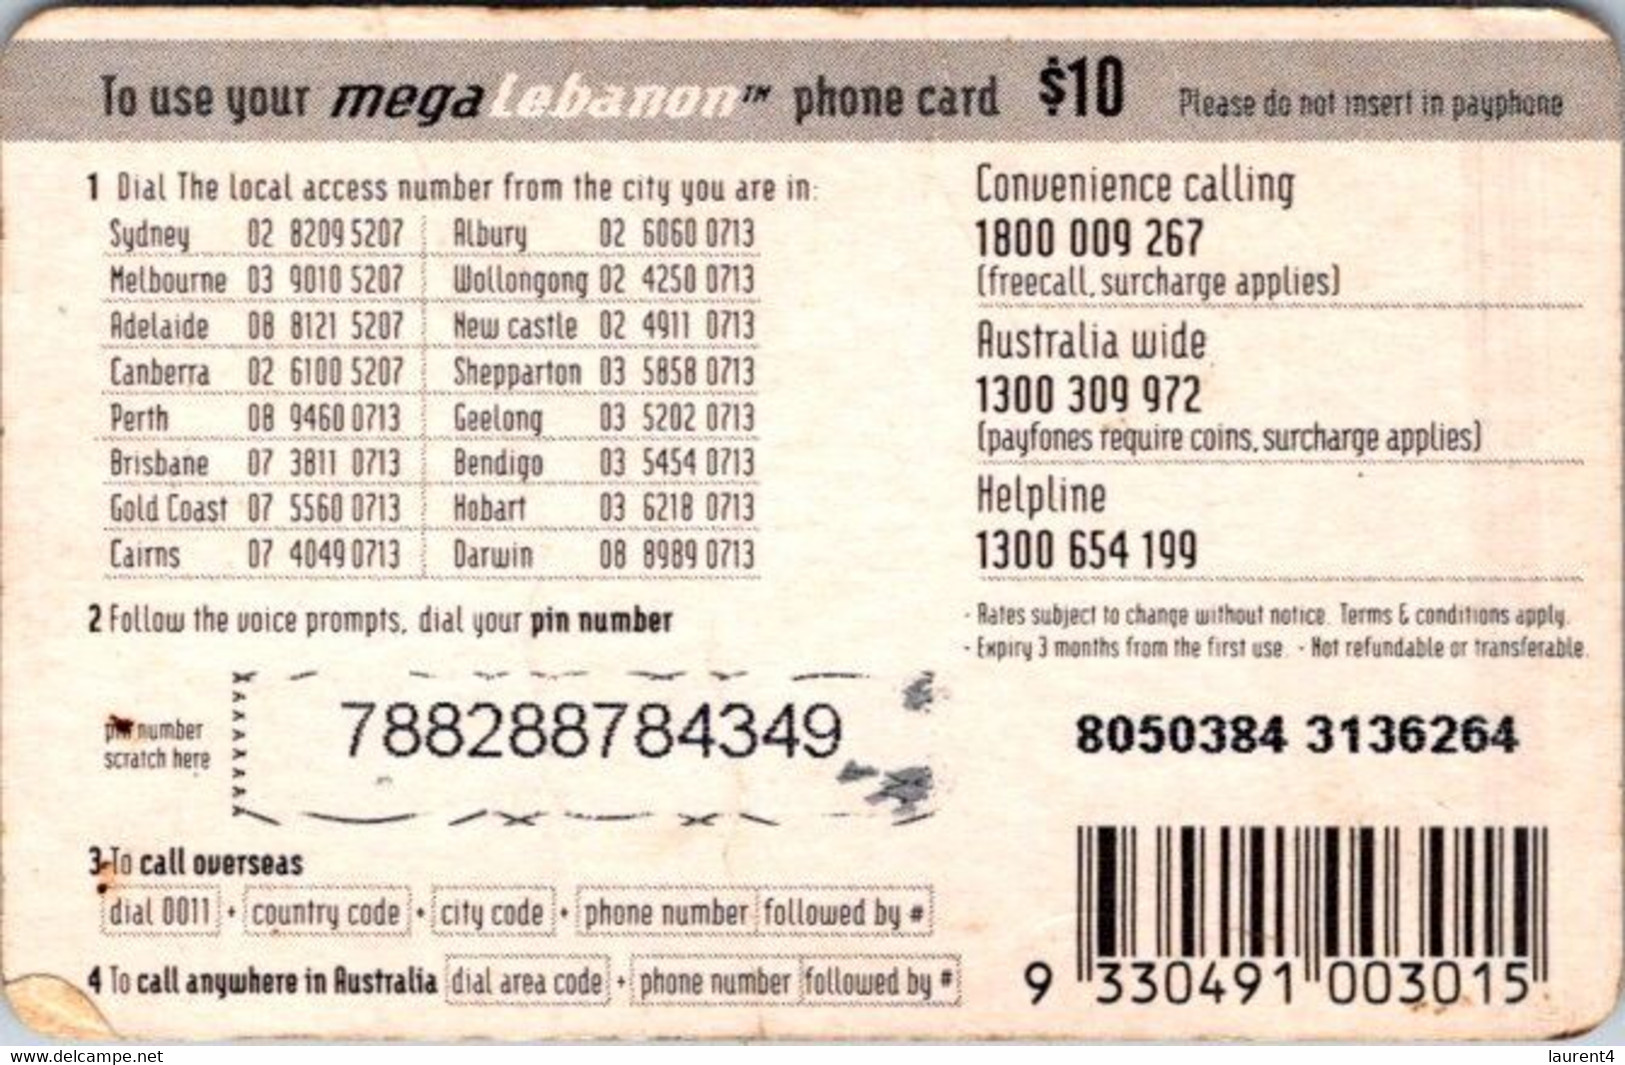 (3-10-2021 F) Phonecard -  Liban - (1 Phonecard) MegaLebanon $ 10.00 - Liban